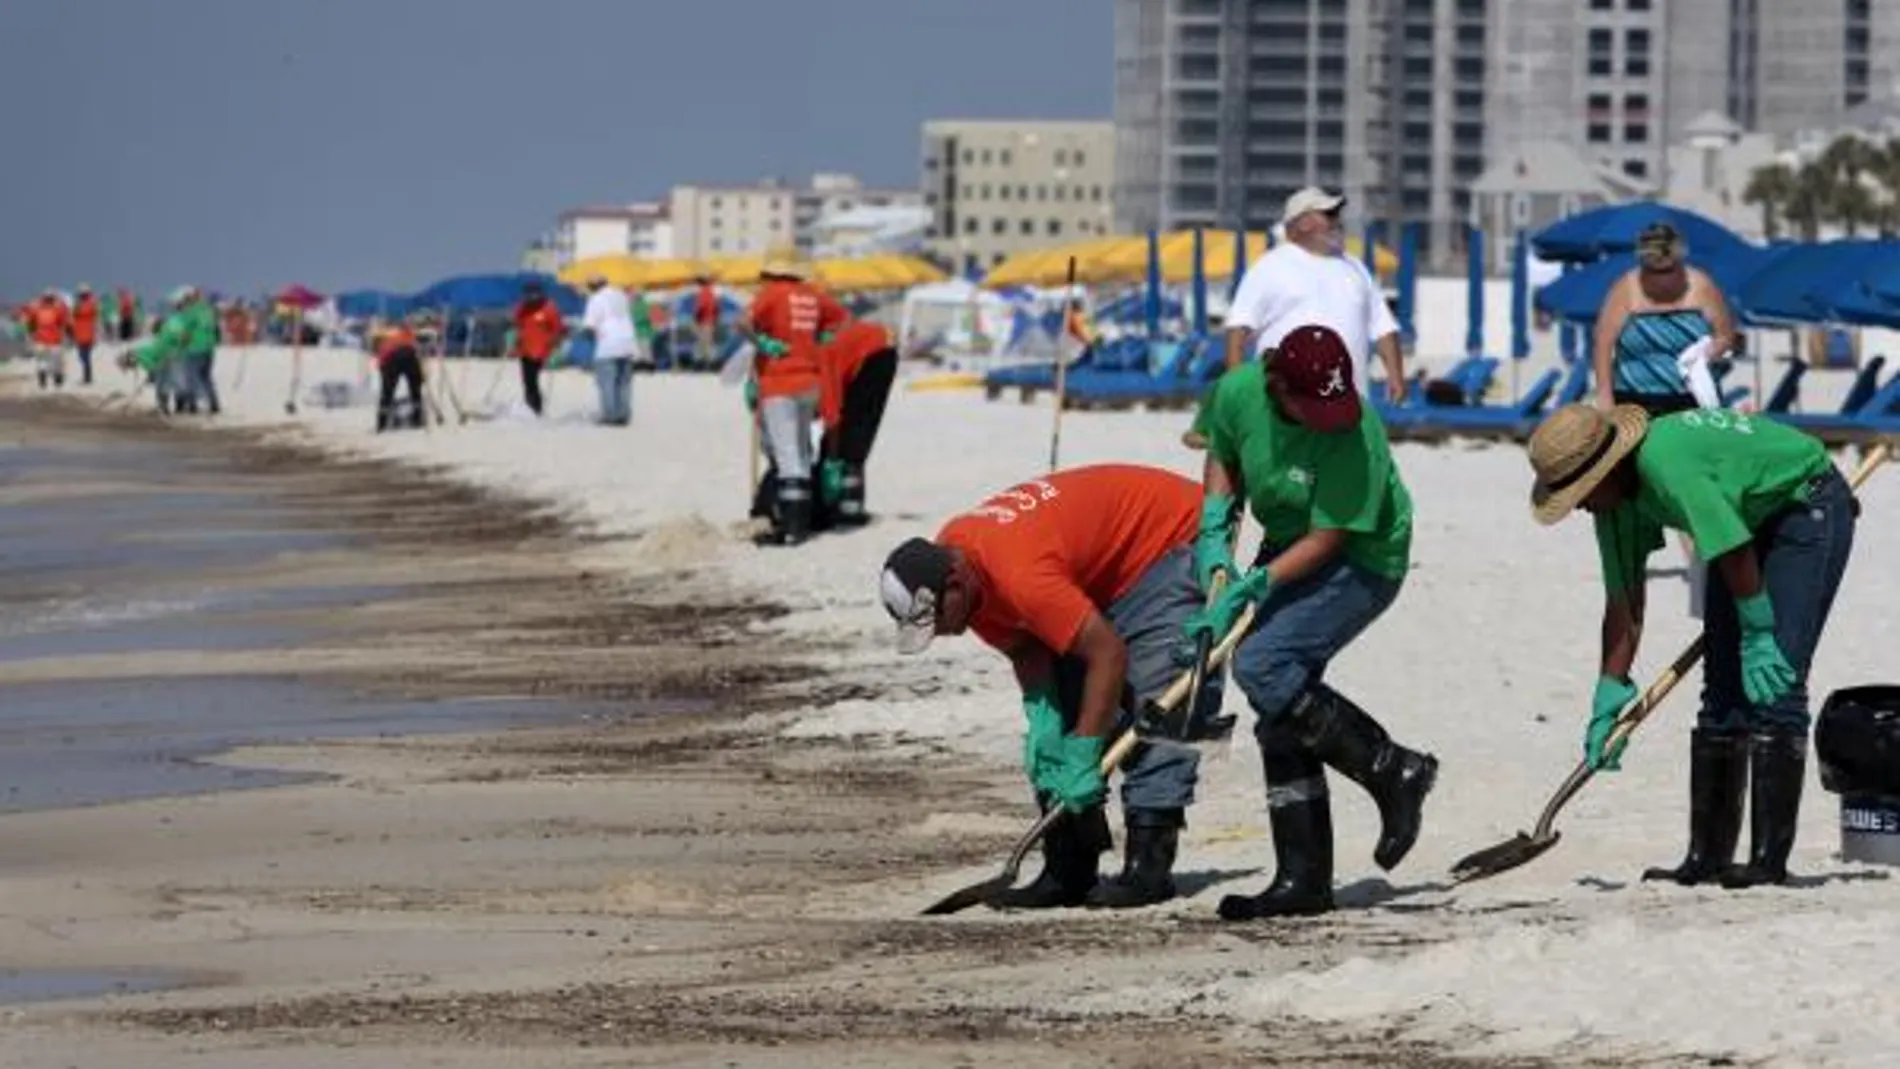 Voluntarios intentan limpiar manchas de crudo en una playa de Alabama